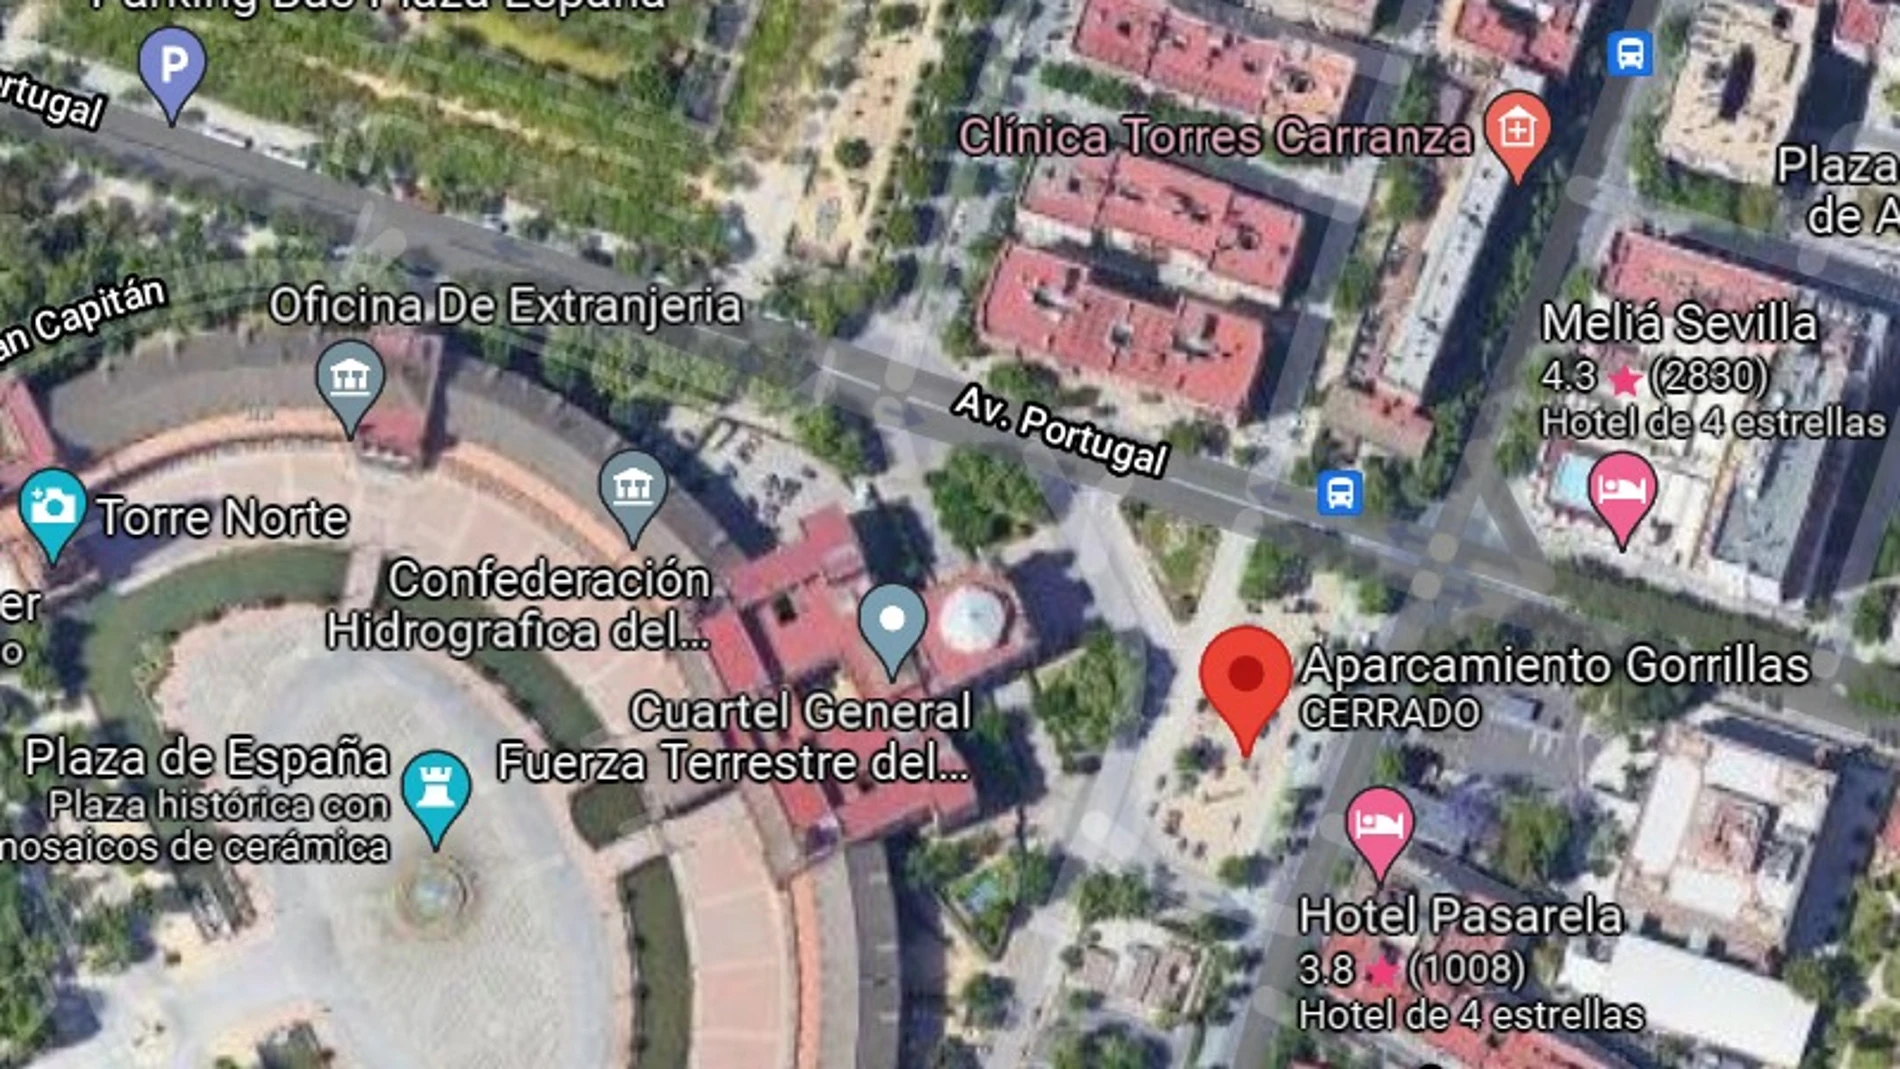 Google Maps reconoce una zona para aparcar en Sevilla como 'parking de gorrillas'